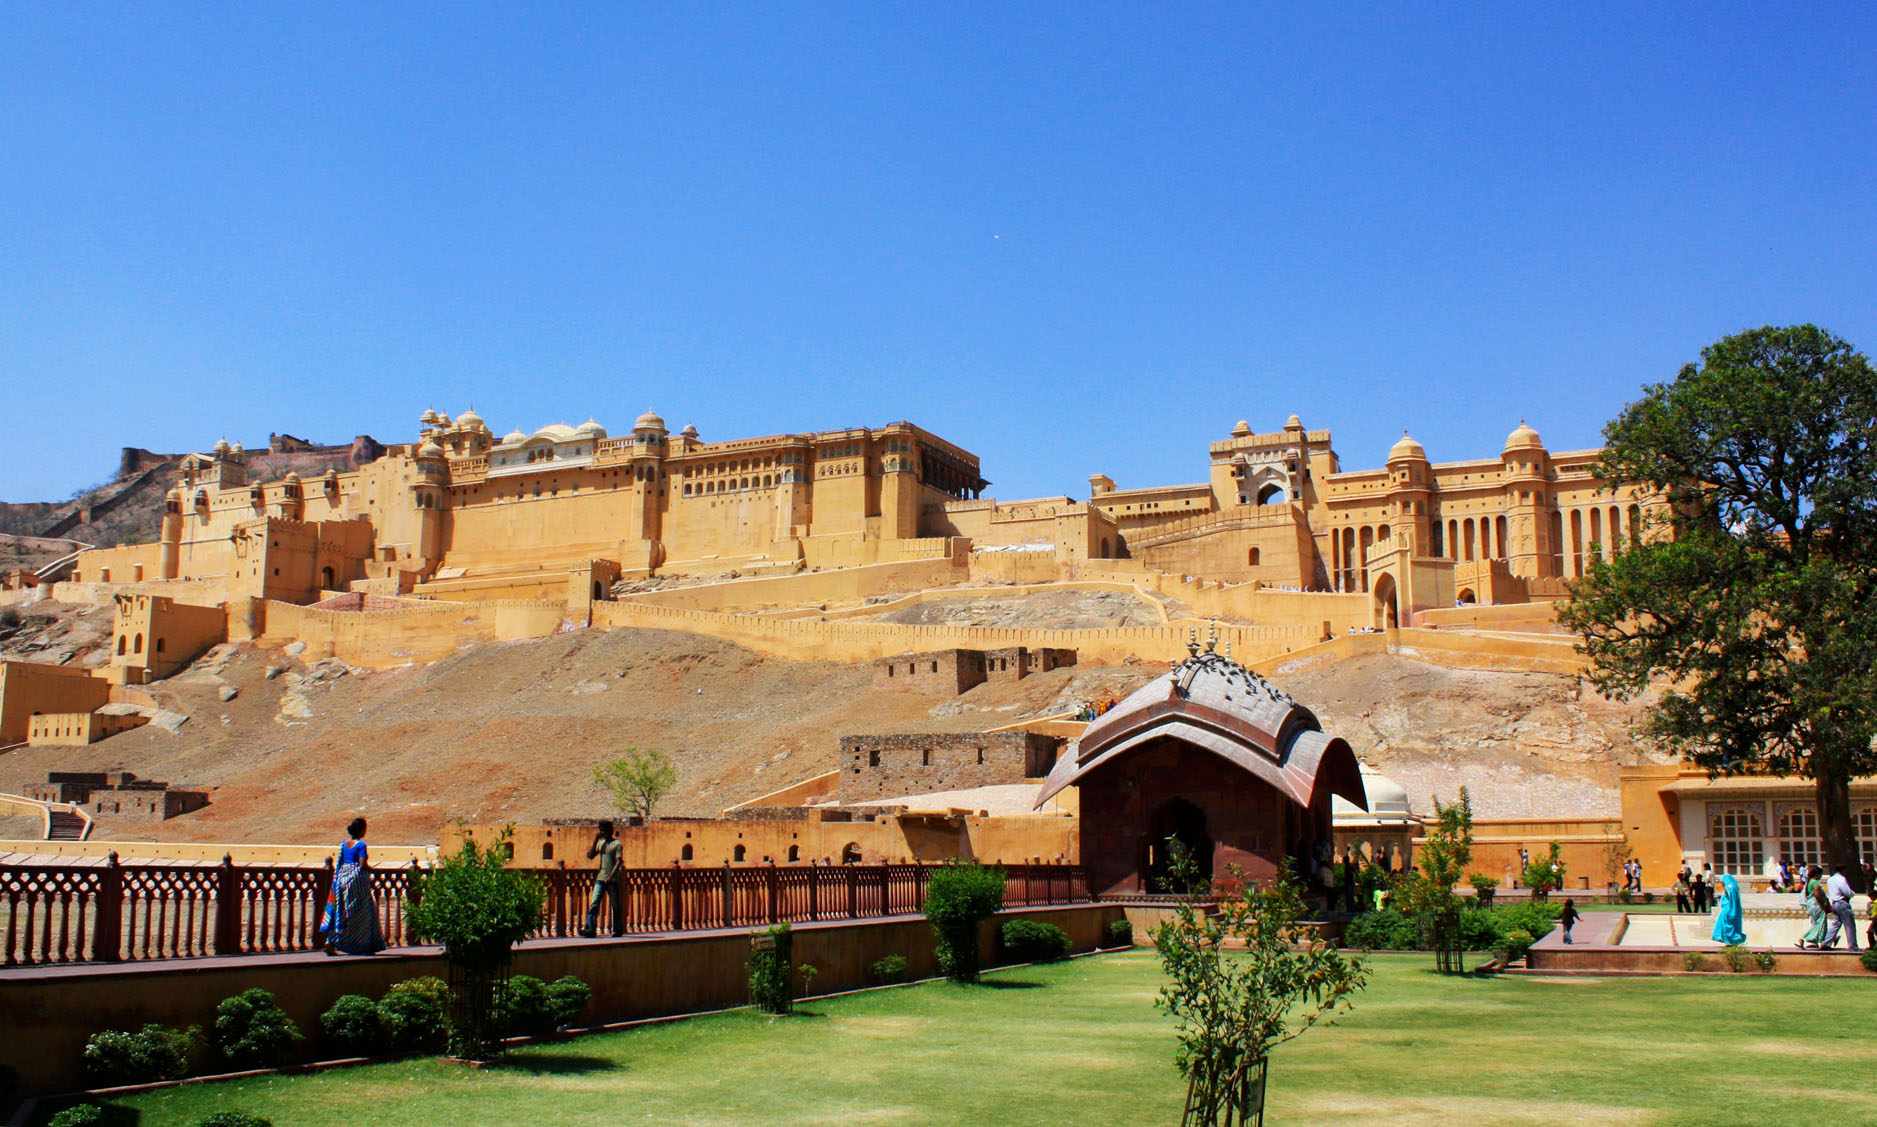 रणथंभौर: रणथंभौर किला एक प्रसिद्ध यूनेस्को विश्व धरोहर स्थल है, जिसका दौरा लगभग सभी यात्री करते हैं जो राजस्थान के इतिहास से रूबरू होना चाहते हैं। लोकप्रिय रणथंभौर राष्ट्रीय उद्यान के मध्य में स्थित, इस किले में किले को जीतने के लिए हुई लड़ाइयों का एक लंबा और उल्लेखनीय इतिहास है, जिसे दूर- दूर से पर्यटक देखने आते है।